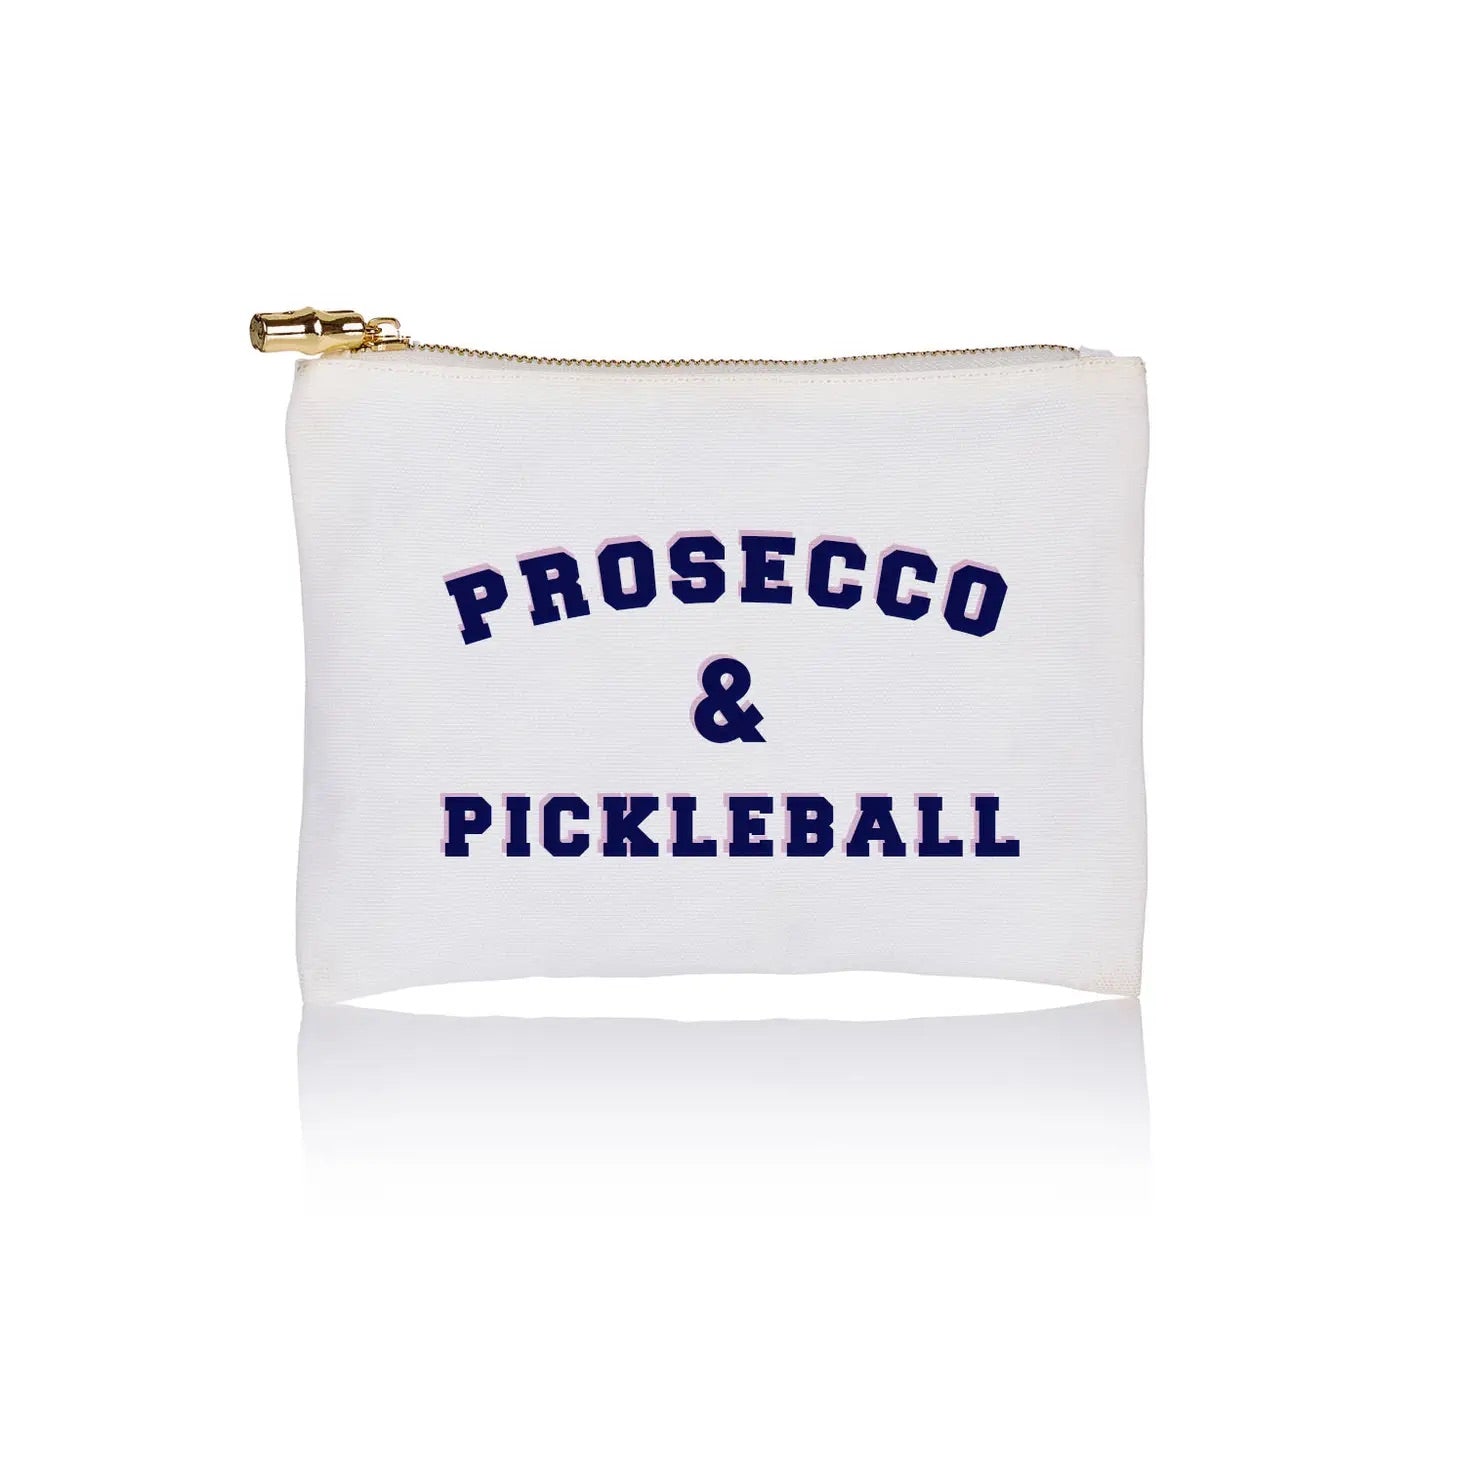 Prosecco & Pickleball Cosmetic Bag